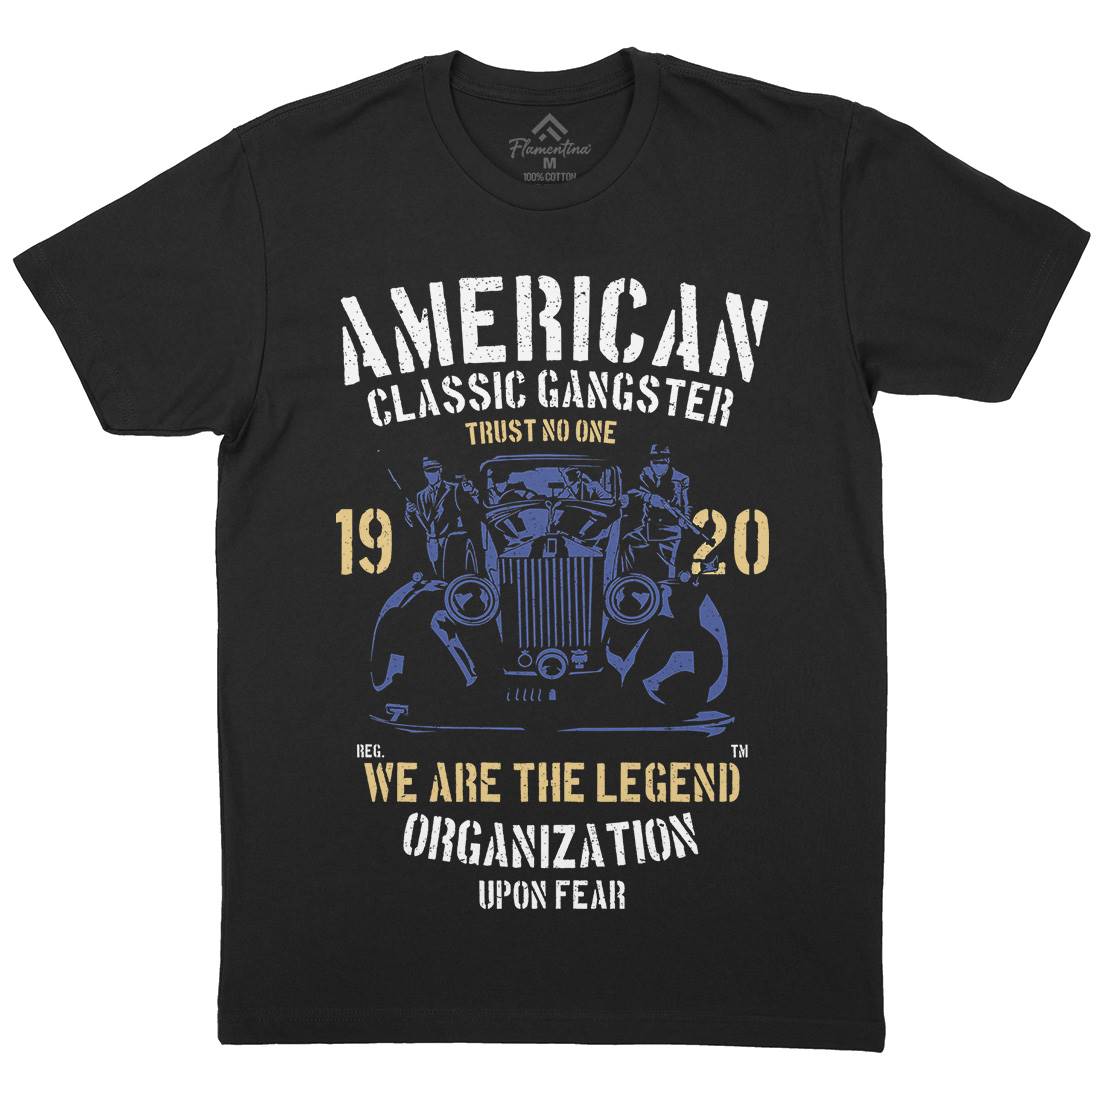 Classic Mens Crew Neck T-Shirt American A608